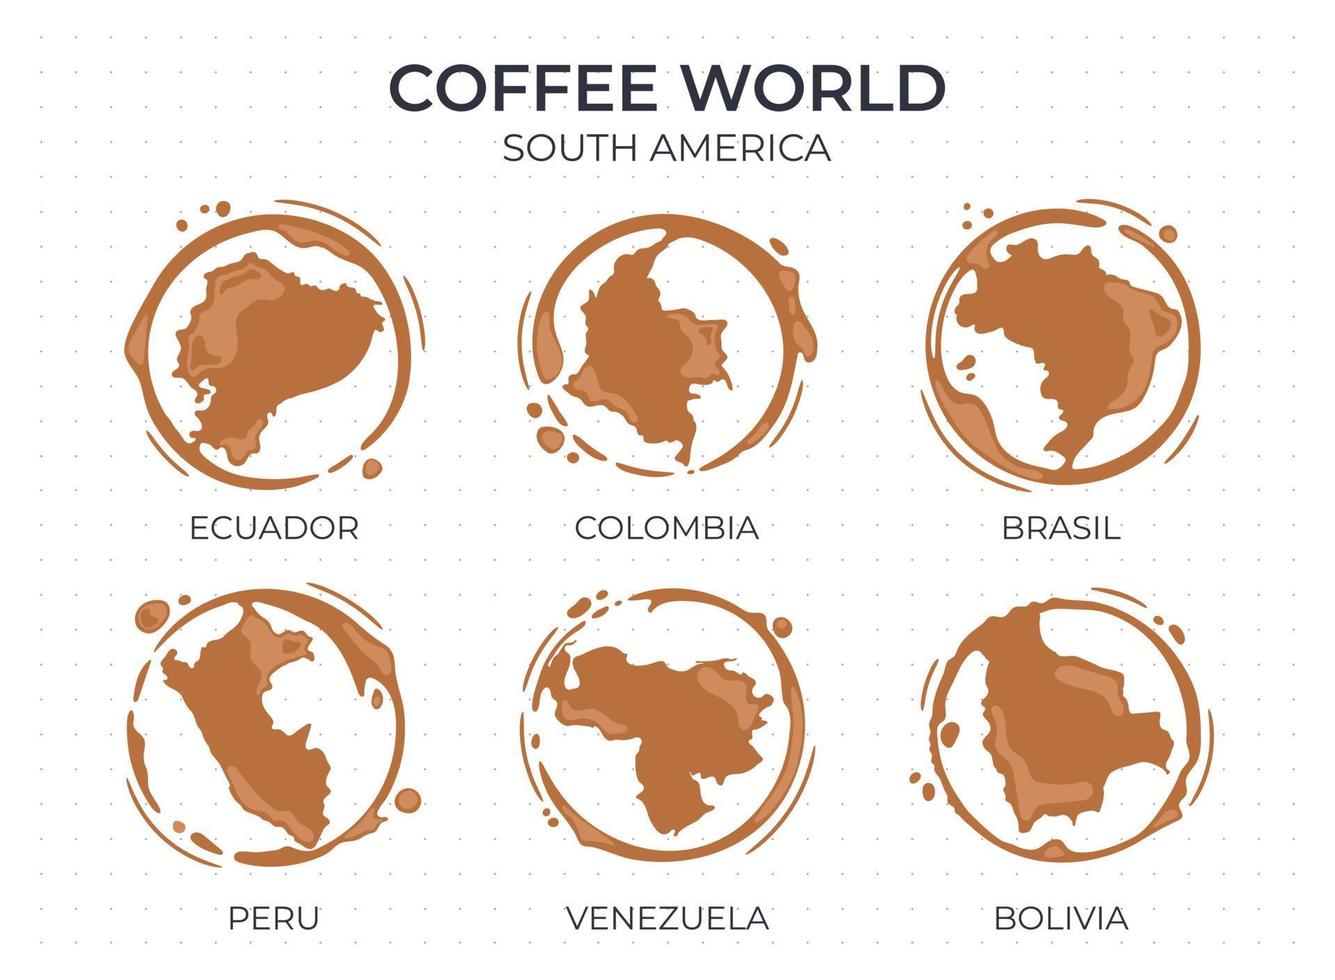 sammlung von runden flecken einer kaffeetasse, die wie ein kaffee geformt sind herkunftsländer, produzenten und exporteure aus südamerika vektor